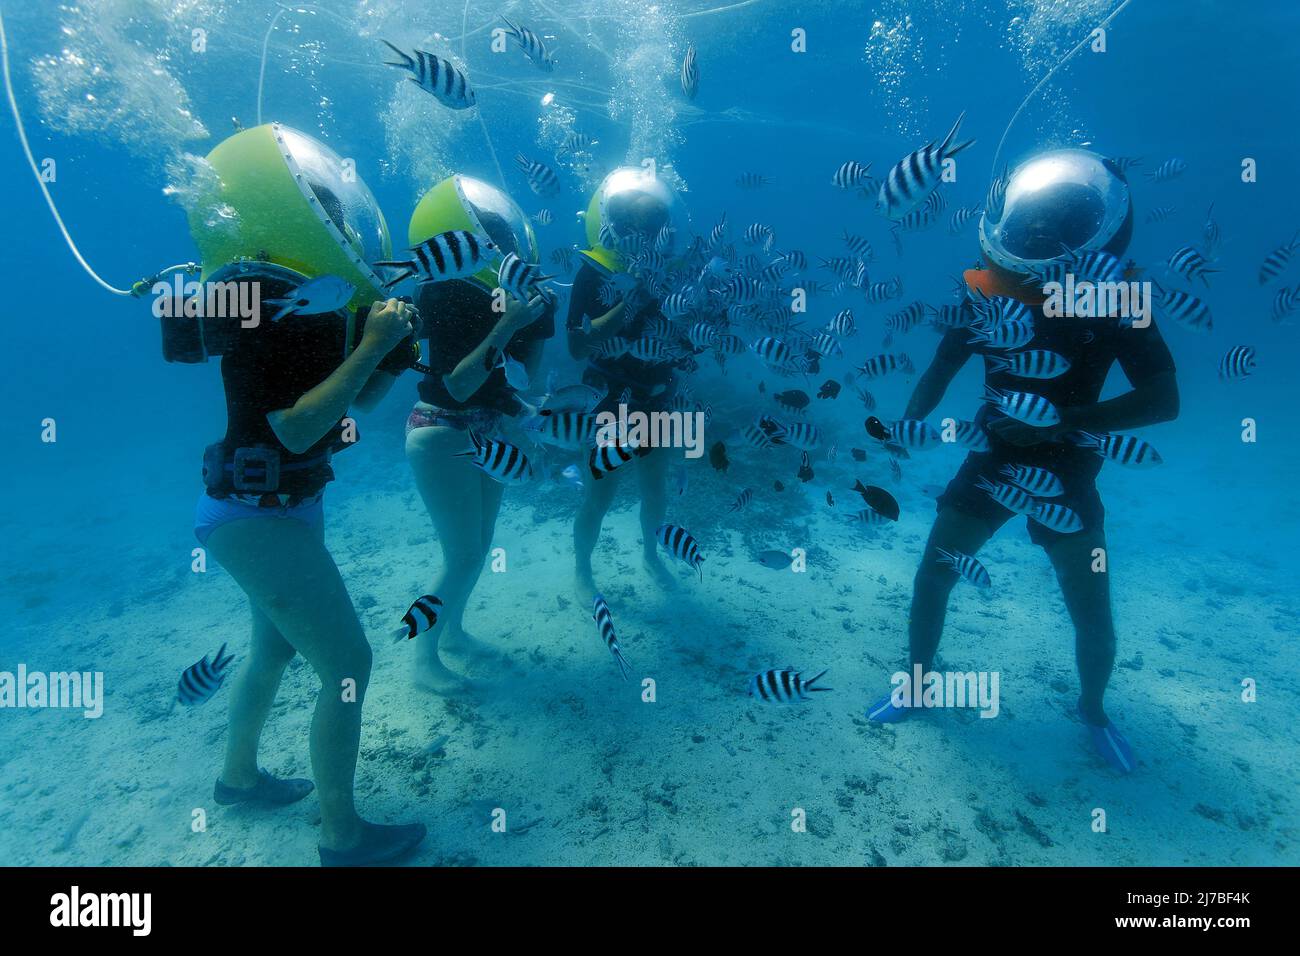 Passeggiata sottomarina, passeggiata subacquea, turisti con caschi subacquei circondati da pesci importanti sergente o píntanos (Abudefduf saxatilis), Mauritius Foto Stock